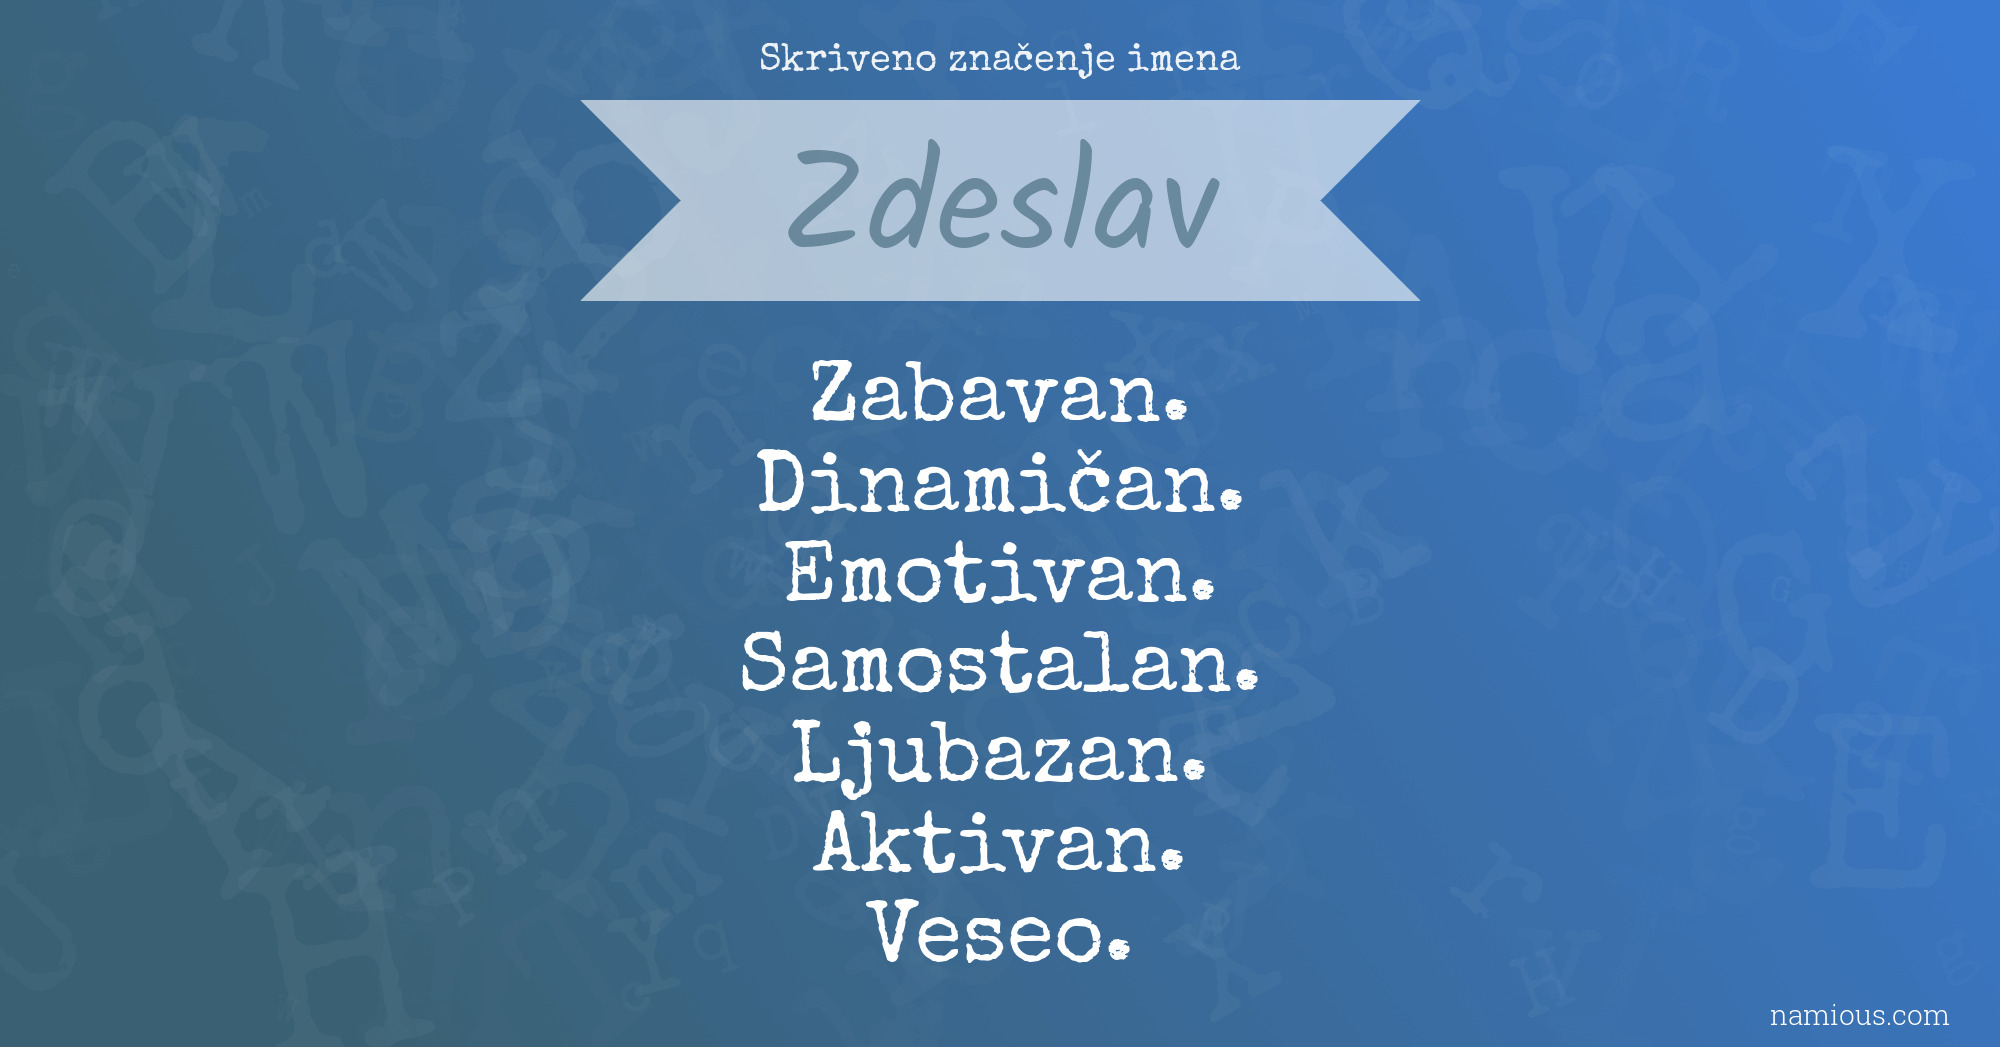 Skriveno značenje imena Zdeslav